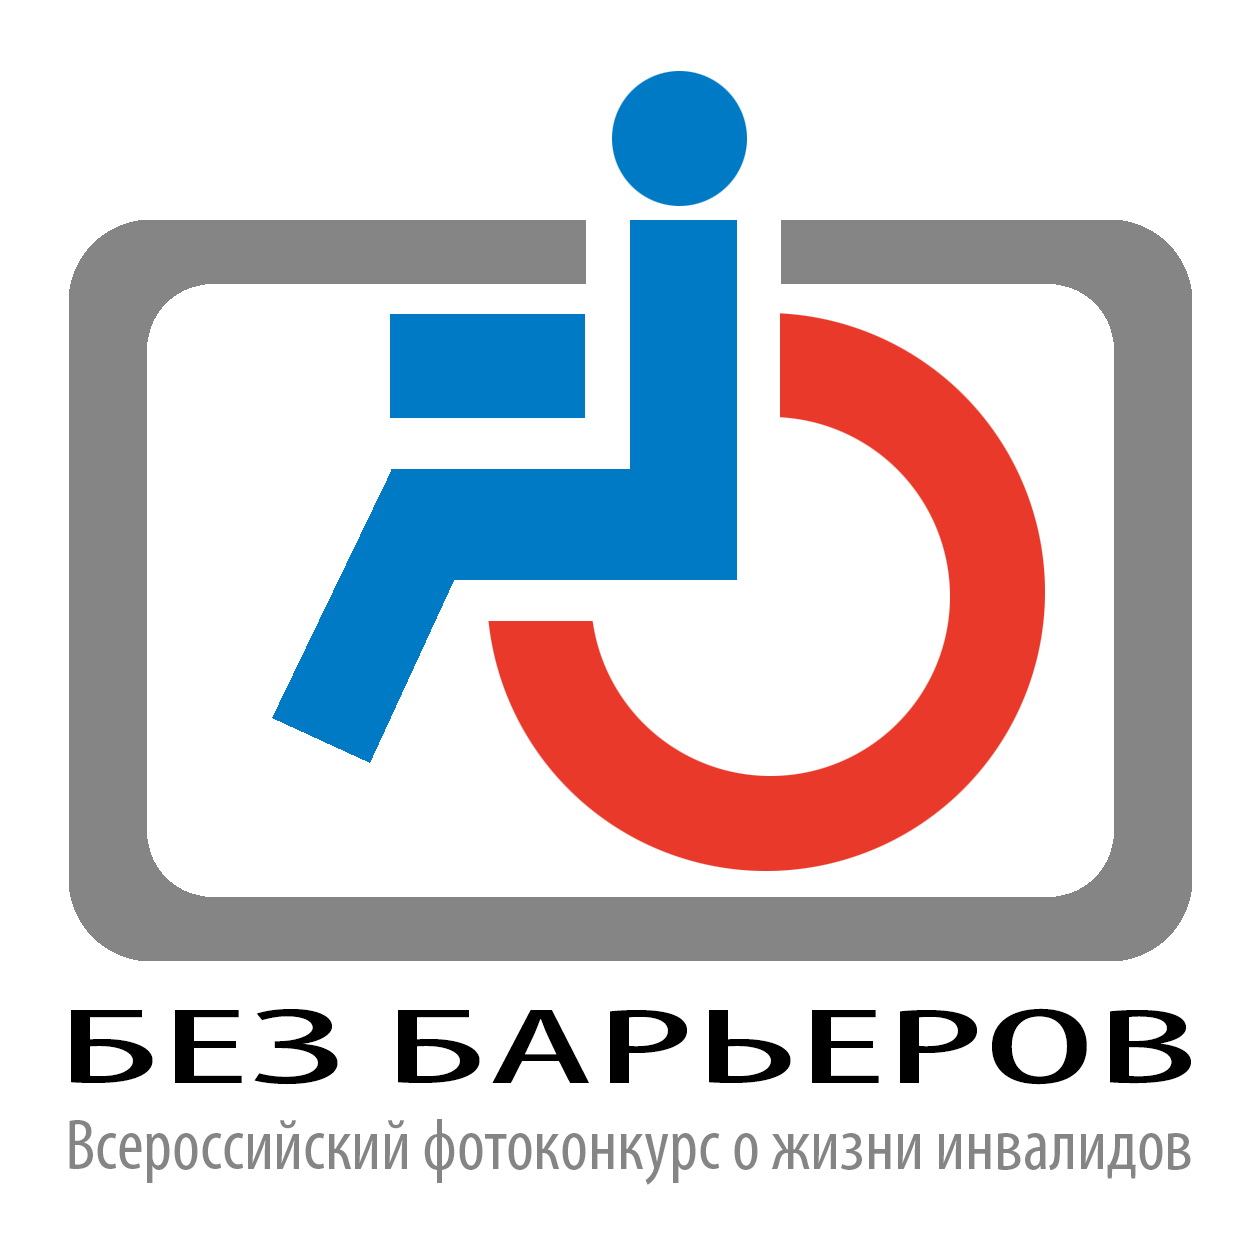 Вои всероссийское общество инвалидов. Эмблема общества инвалидов. Всероссийское общество инвалидов логотип. Логотип ВОИ инвалид. Без барьеров.